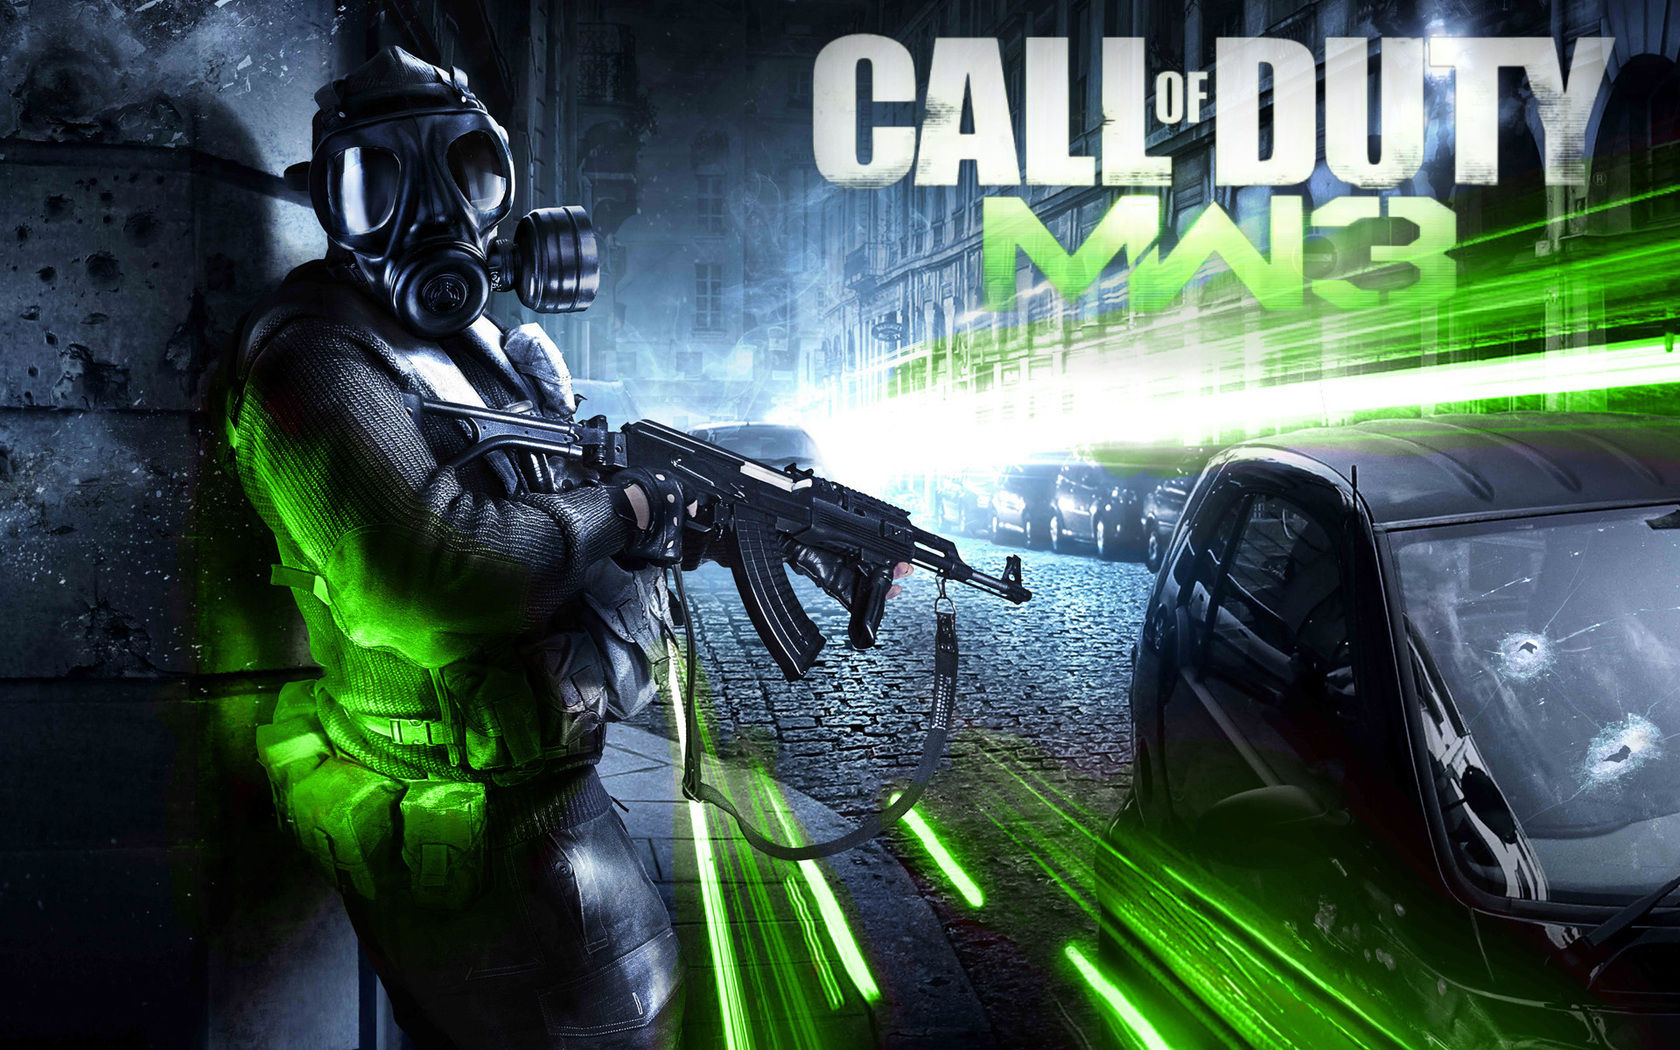 Hình nền Call of Duty Modern Warfare 3: Với hình nền Call of Duty Modern Warfare 3, bạn có thể tận hưởng những hình ảnh đẹp nhất của trò chơi này mà không cần phải chơi. Hình ảnh chất lượng cao và sáng tạo này sẽ chinh phục trái tim người hâm mộ của Call of Duty.